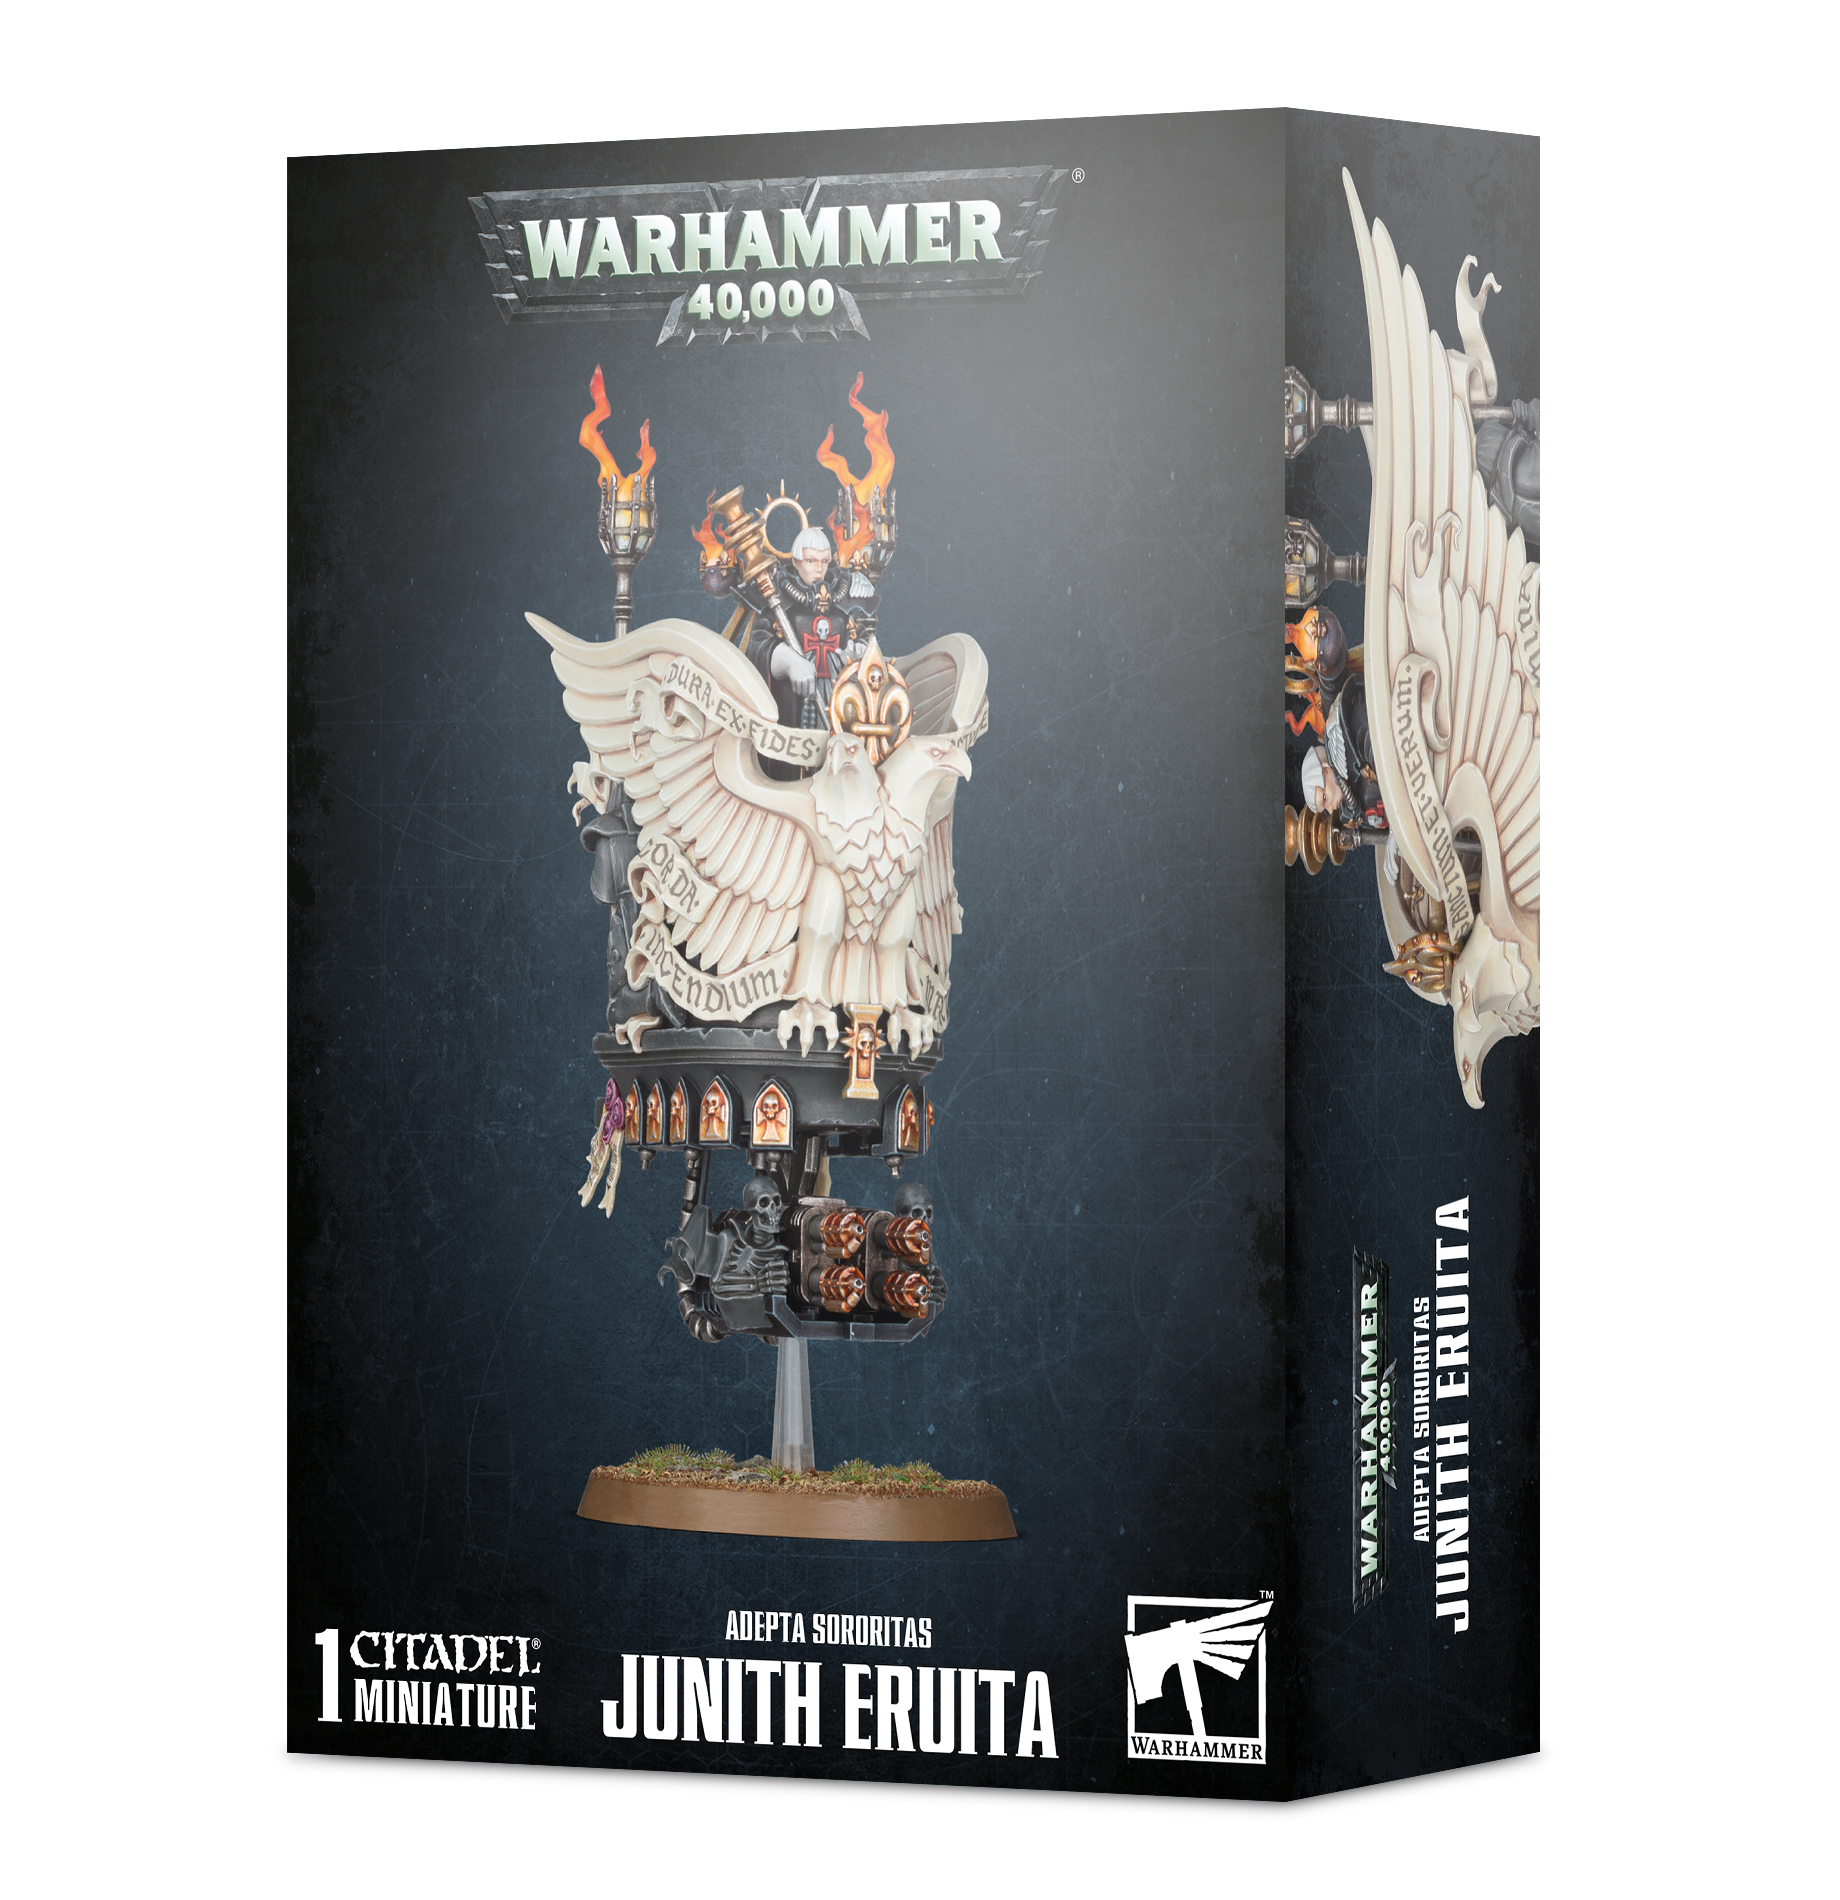 Warhammer 40,000: Adepta Sororitas: Junith Eruita 